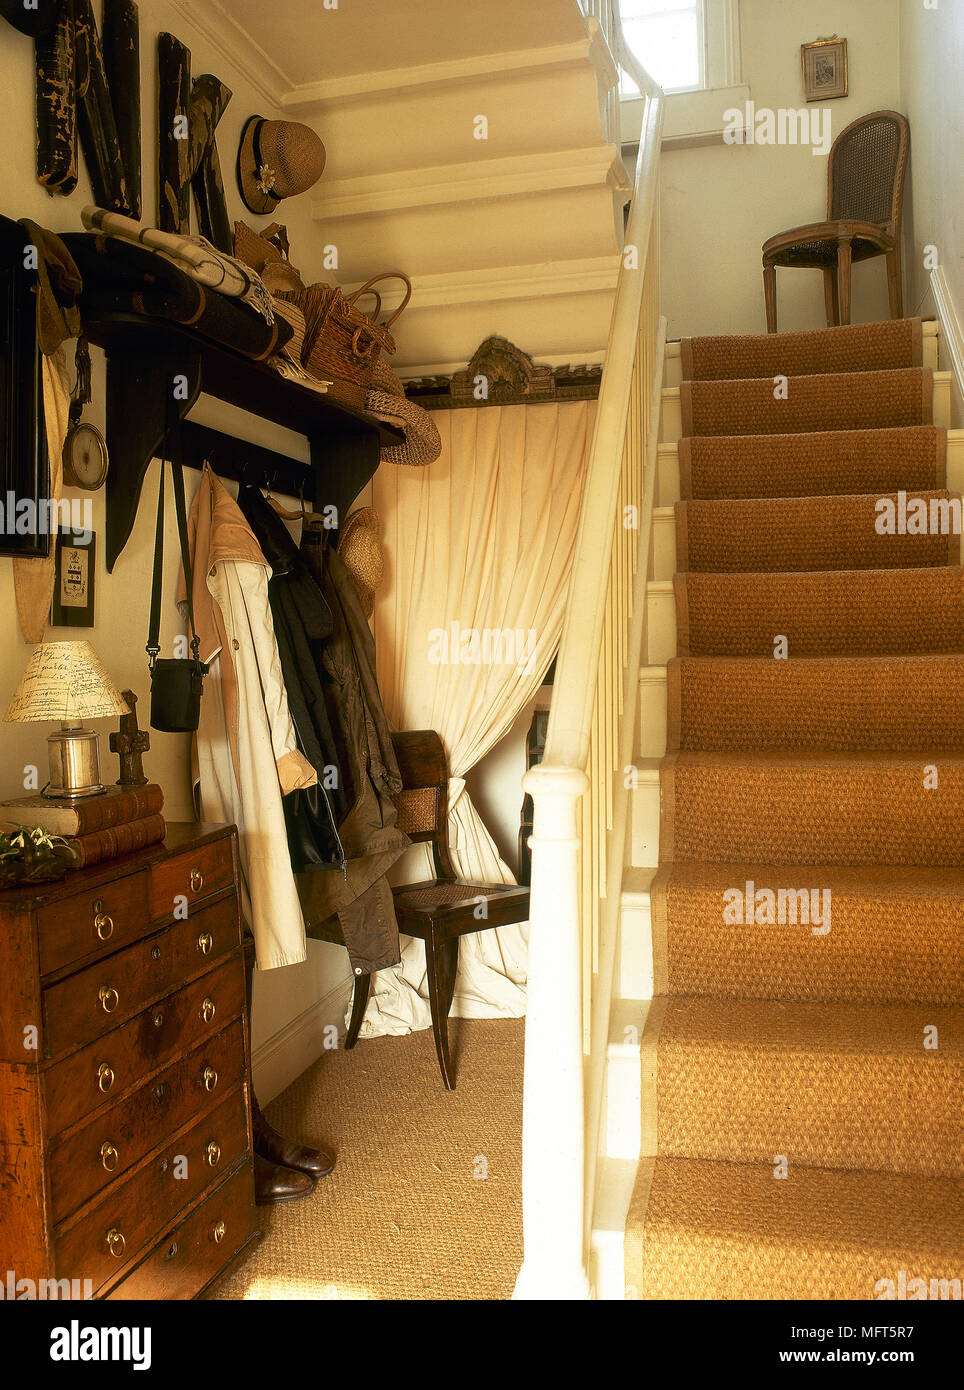 Ein Detail einer traditionellen Flur mit Treppe, Kommode, Garderobe  Stockfotografie - Alamy